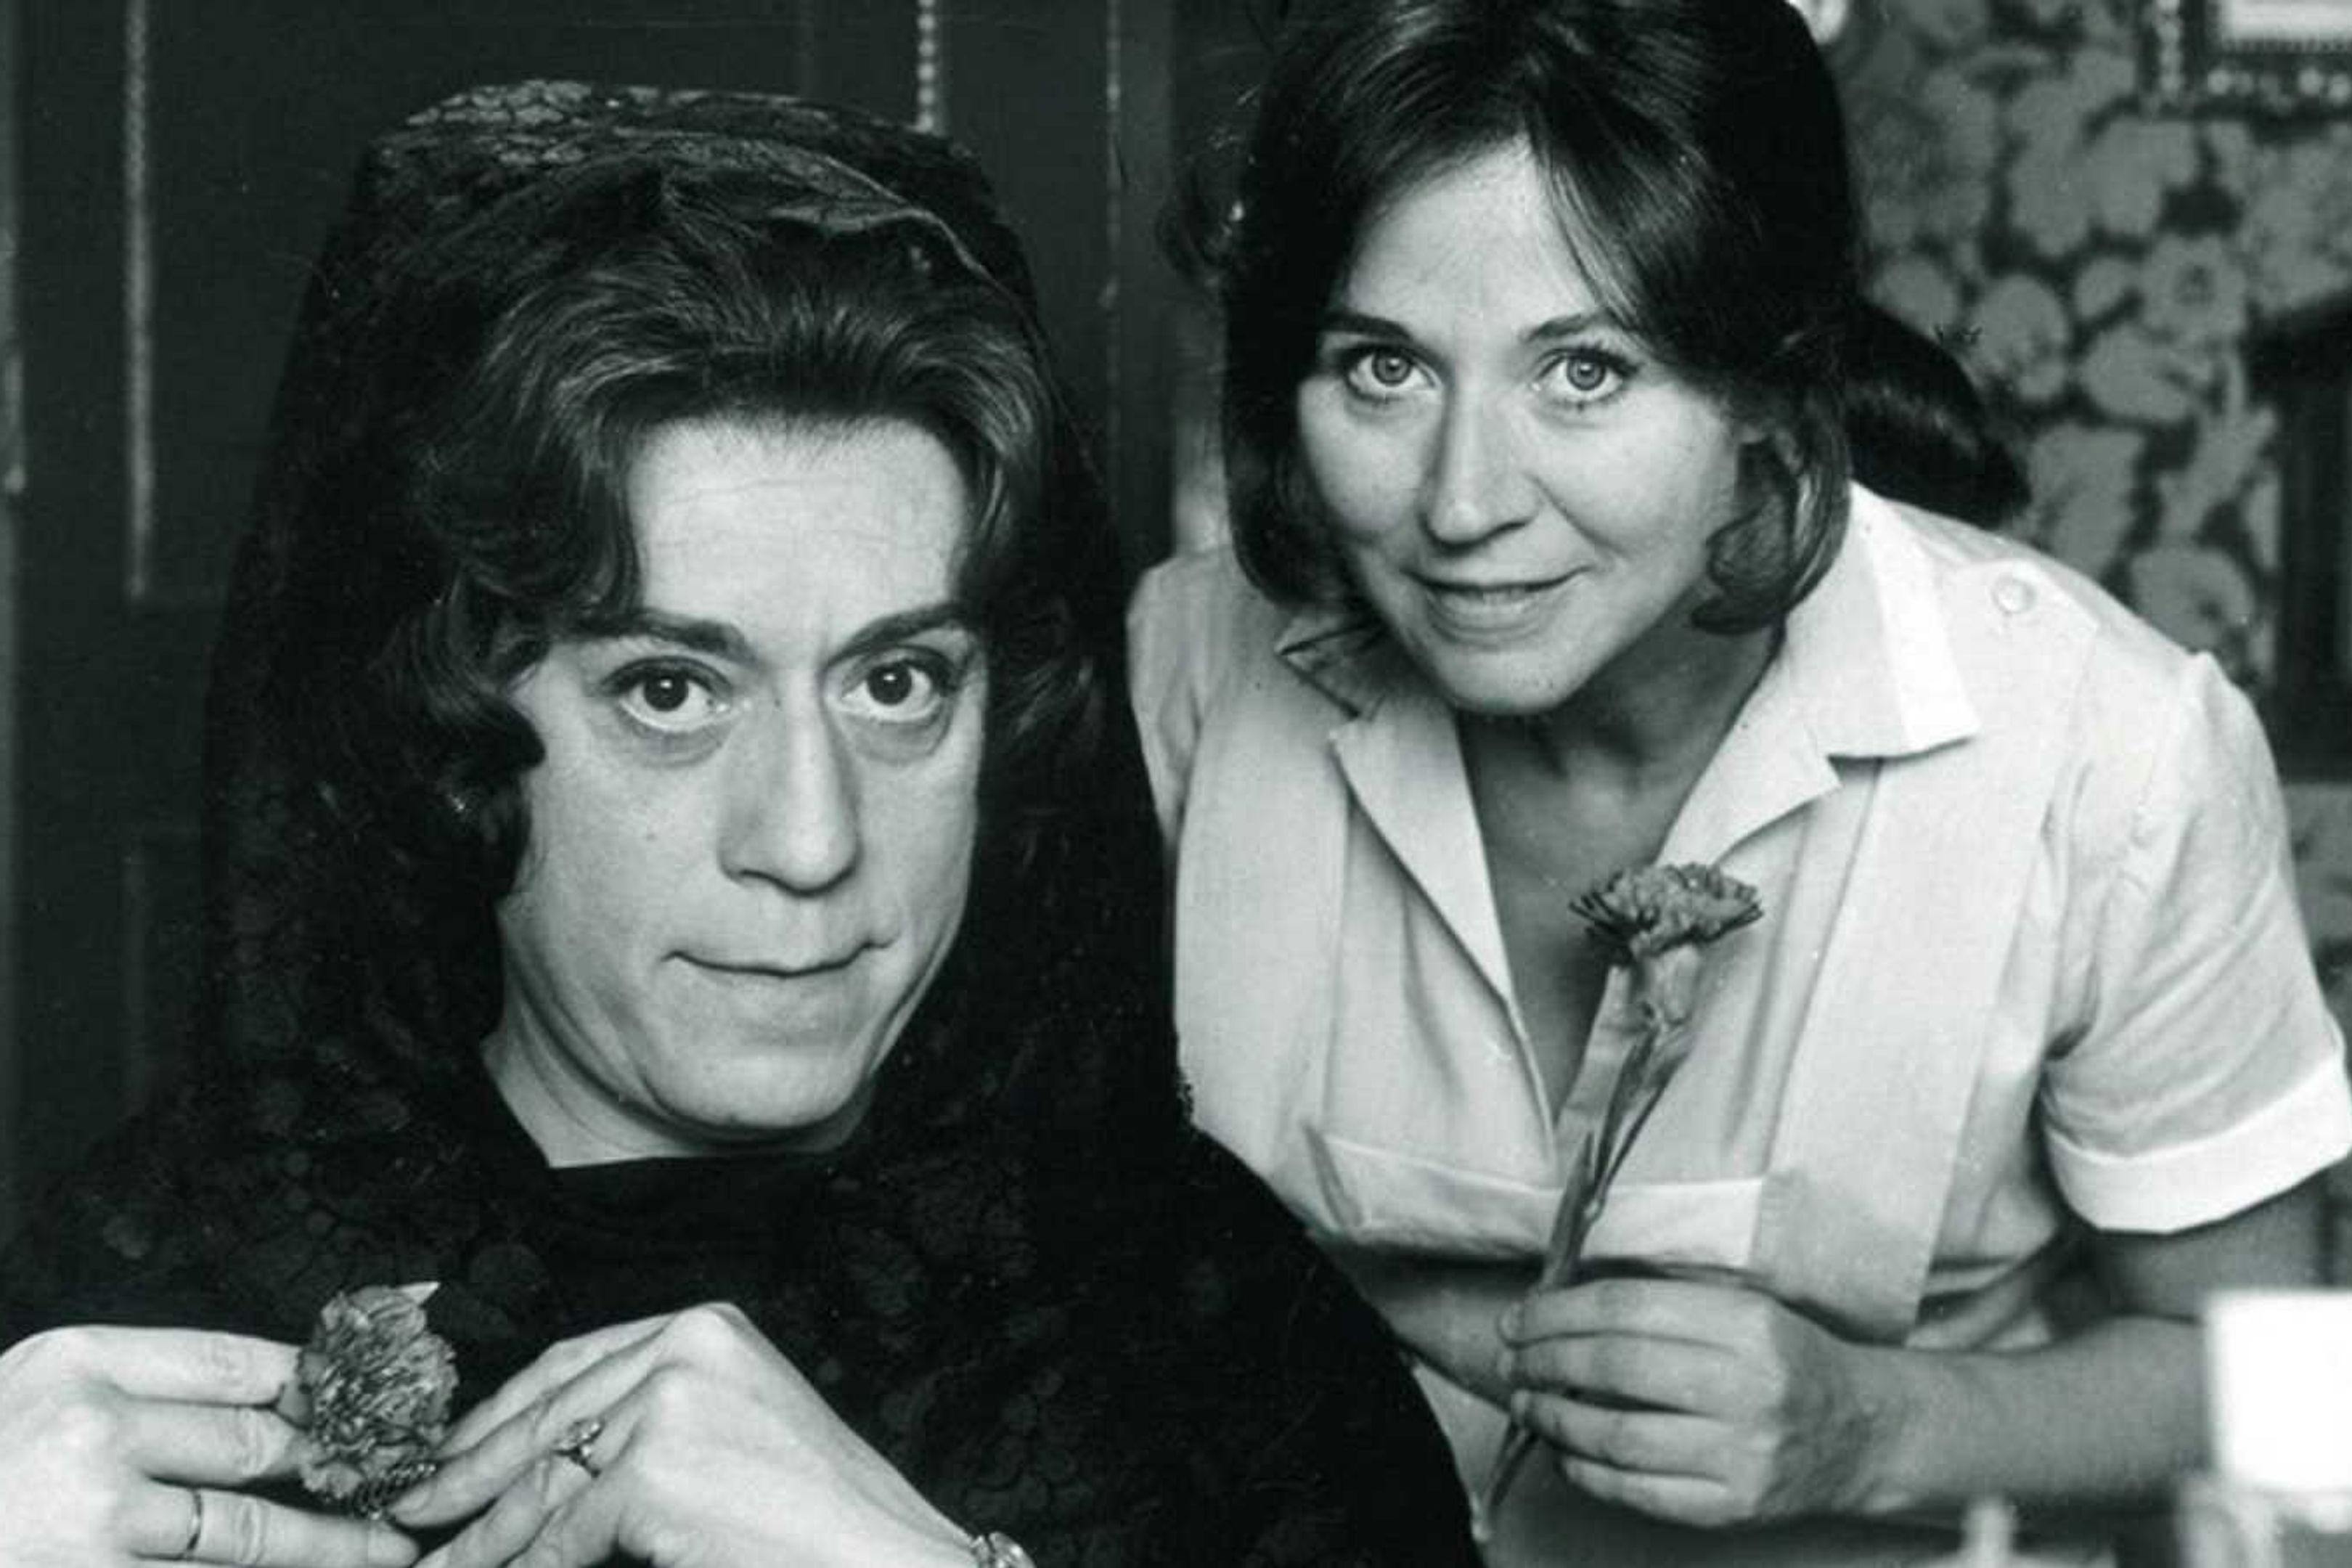 José Luis López Vázquez y Julieta Serrano en un fotograma de 'Mi querida señorita', de Jaime de Armiñán